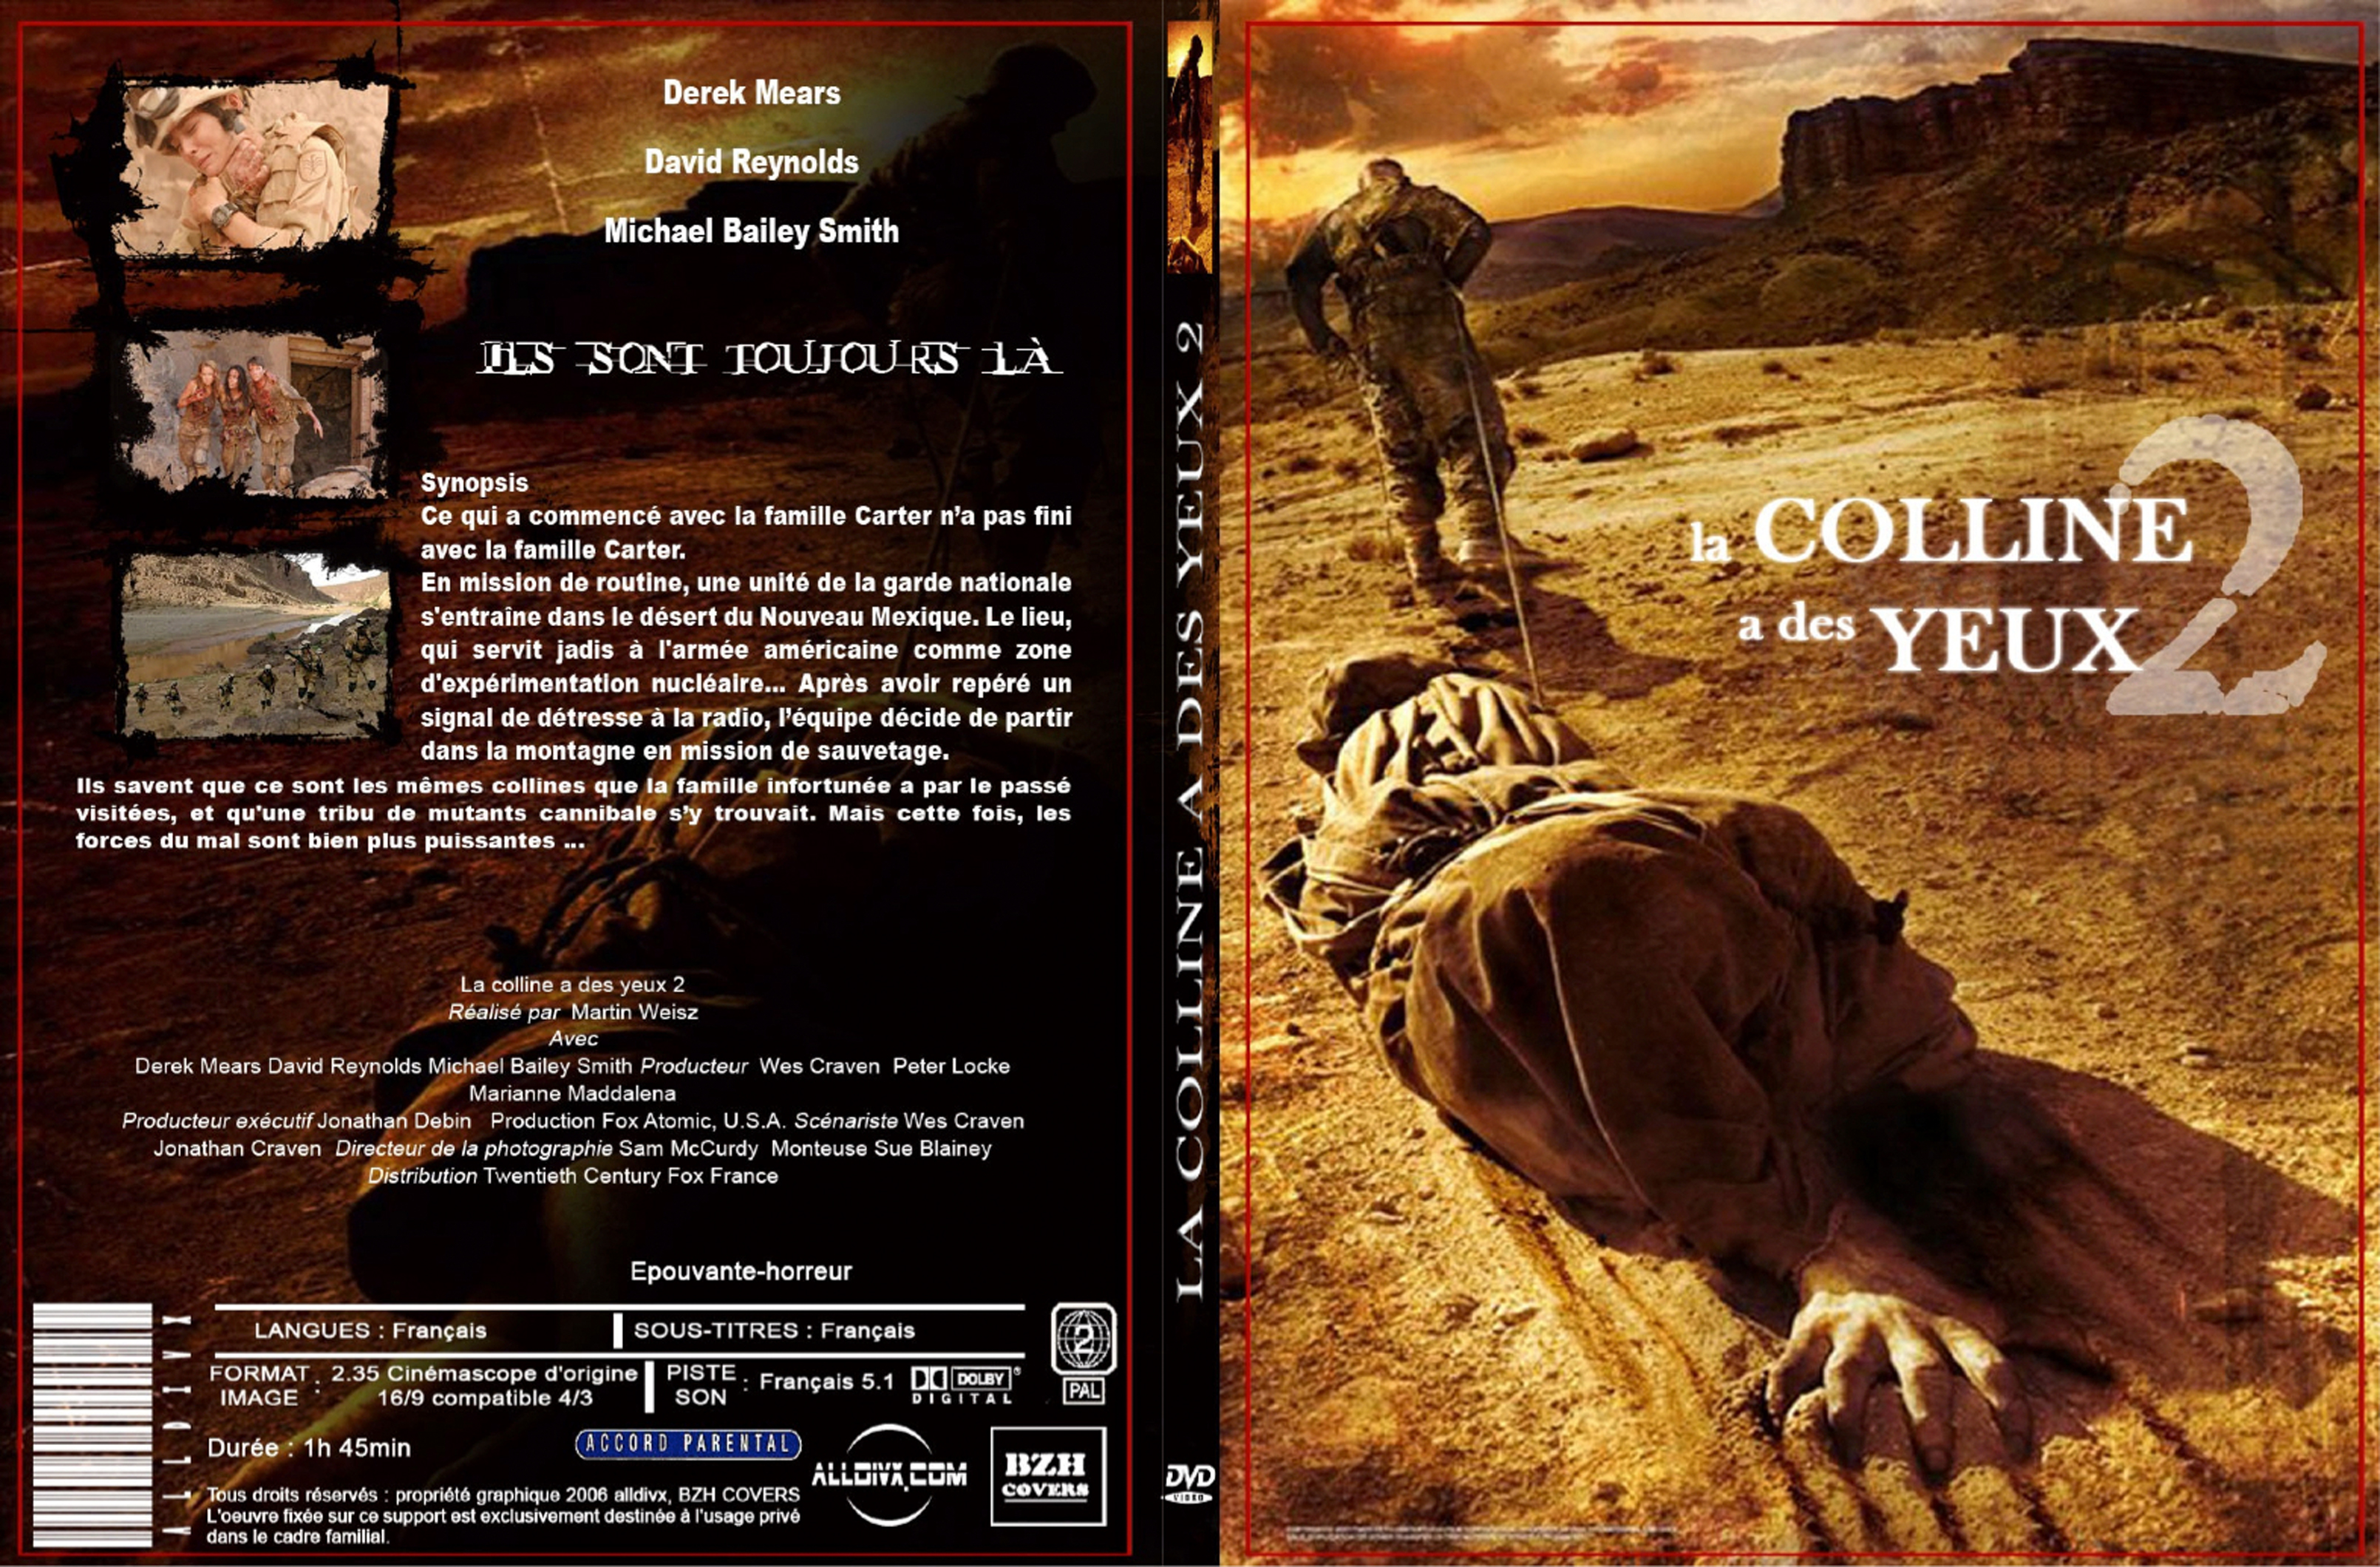 Jaquette DVD La colline a des yeux 2 (2007) - SLIM